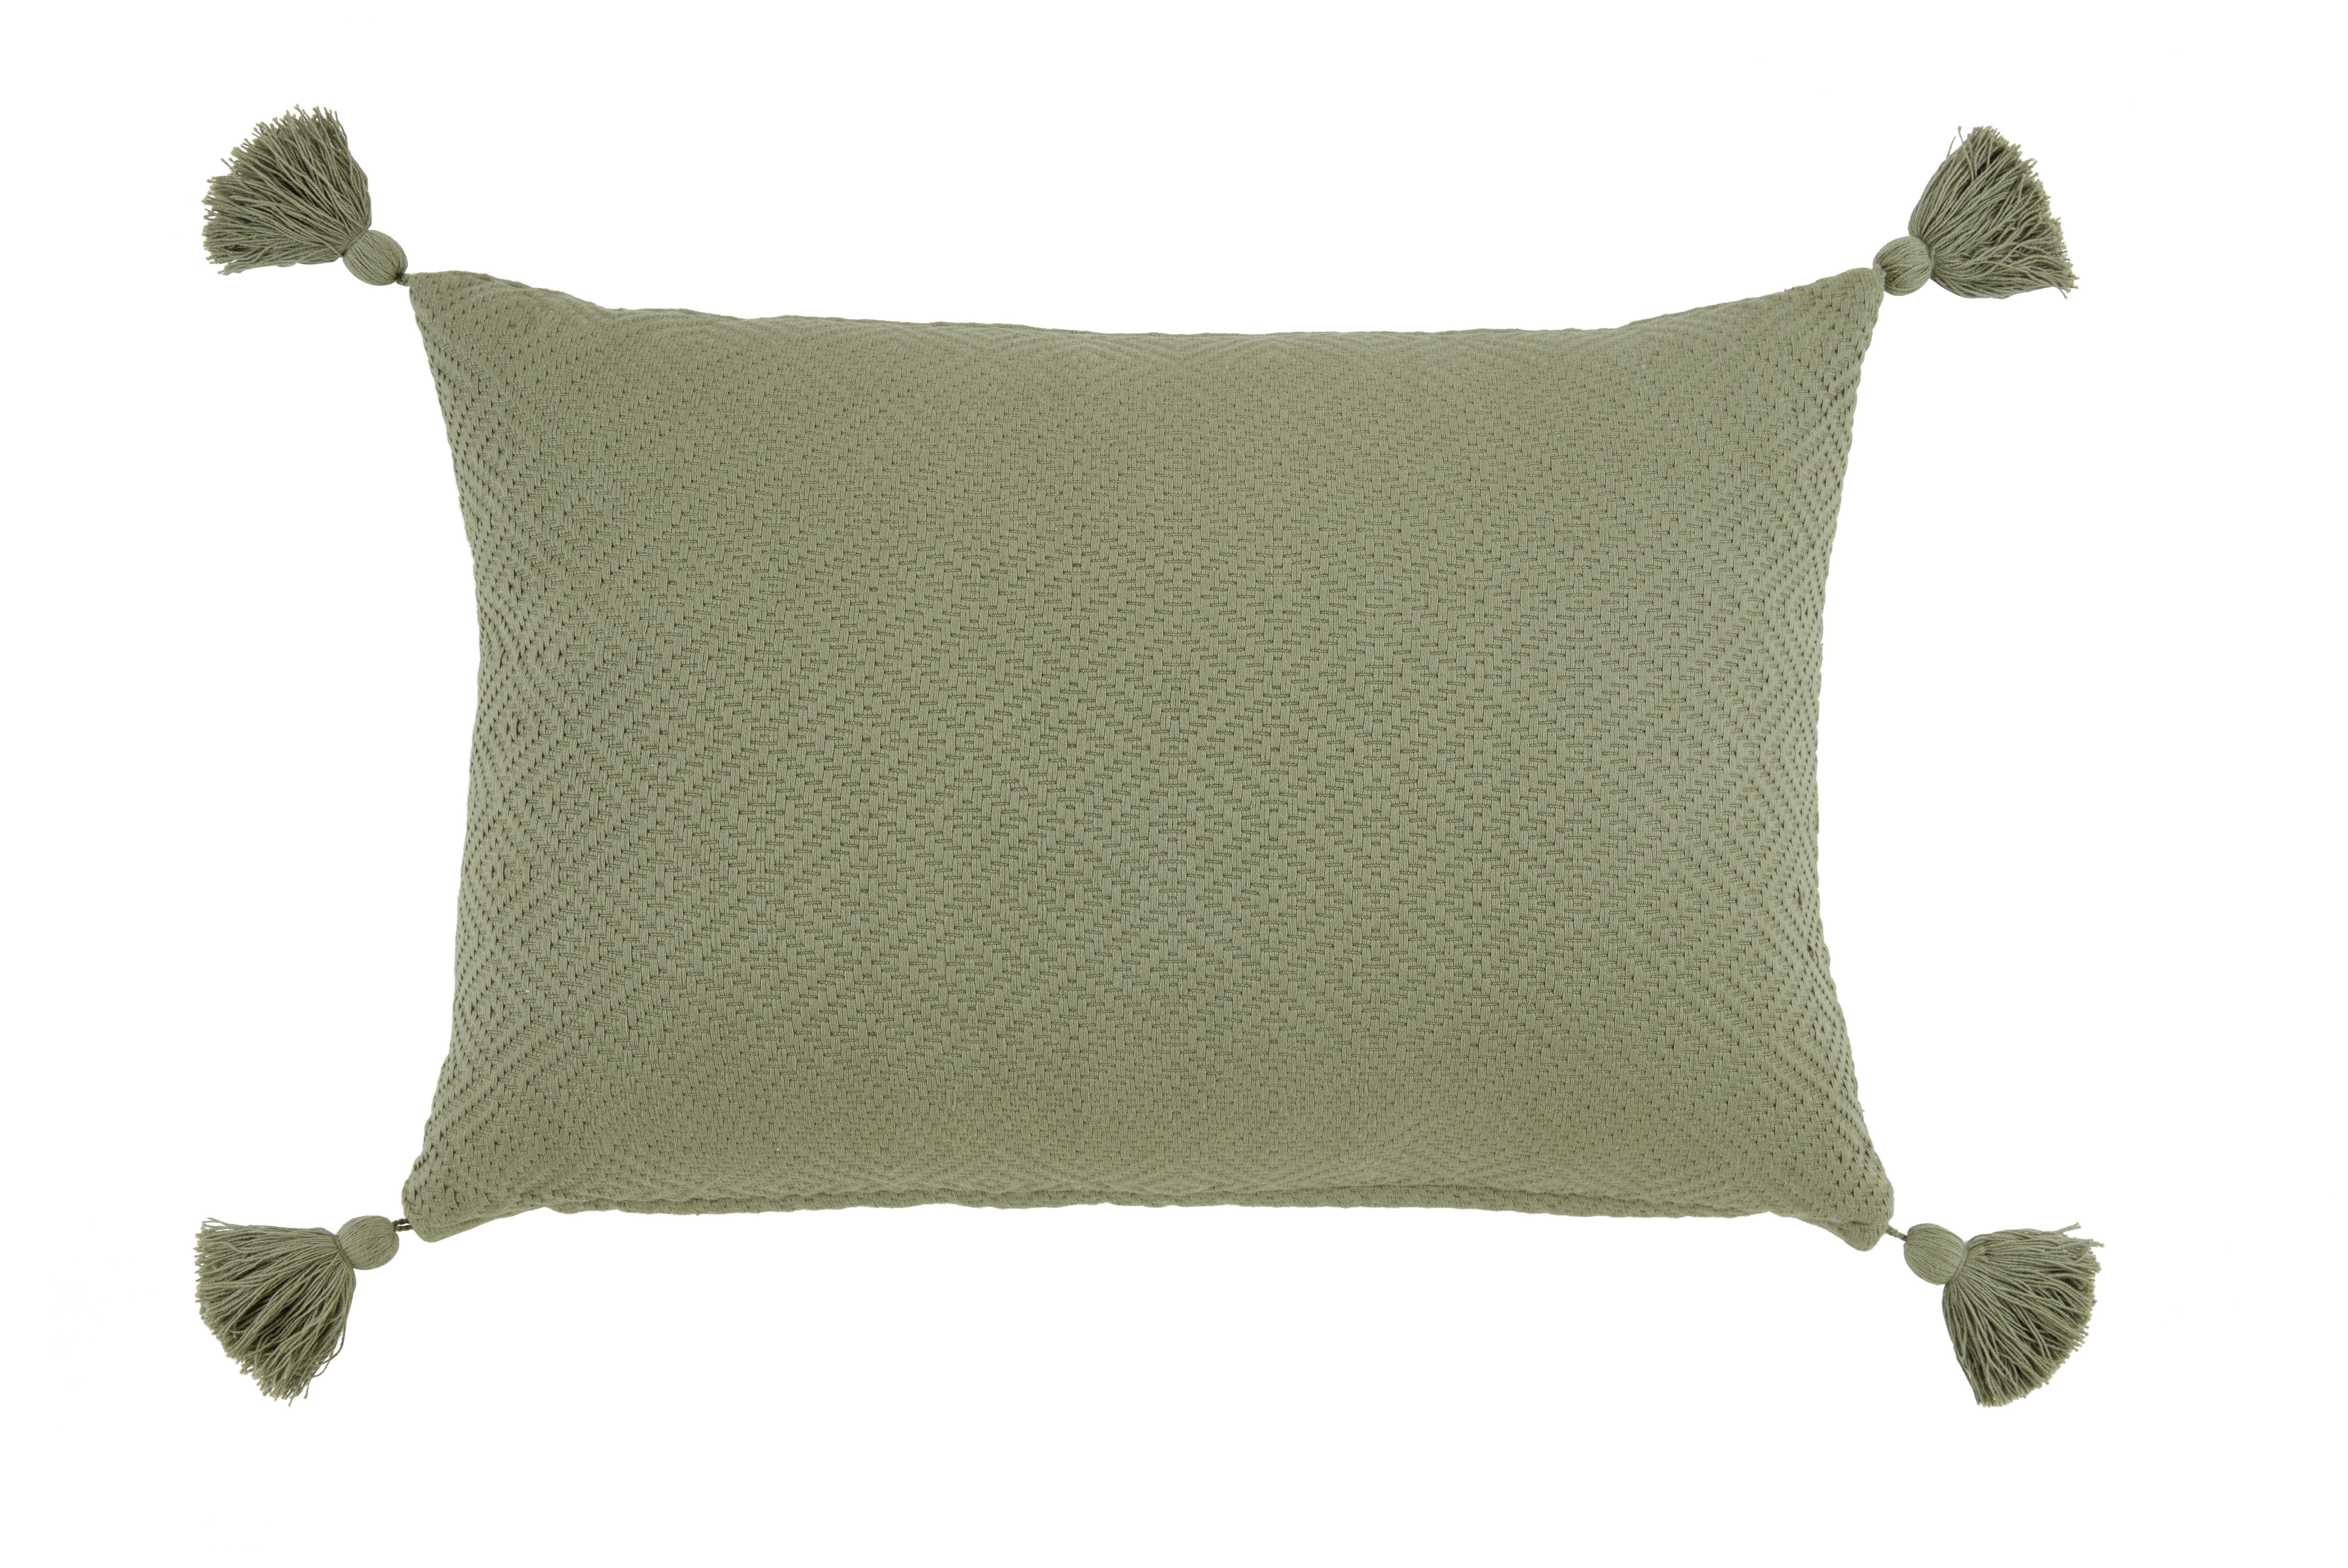 Dekorační Polštář Frieda, 40/60cm, Zelená - zelená, Moderní, textil (40/60cm) - Modern Living